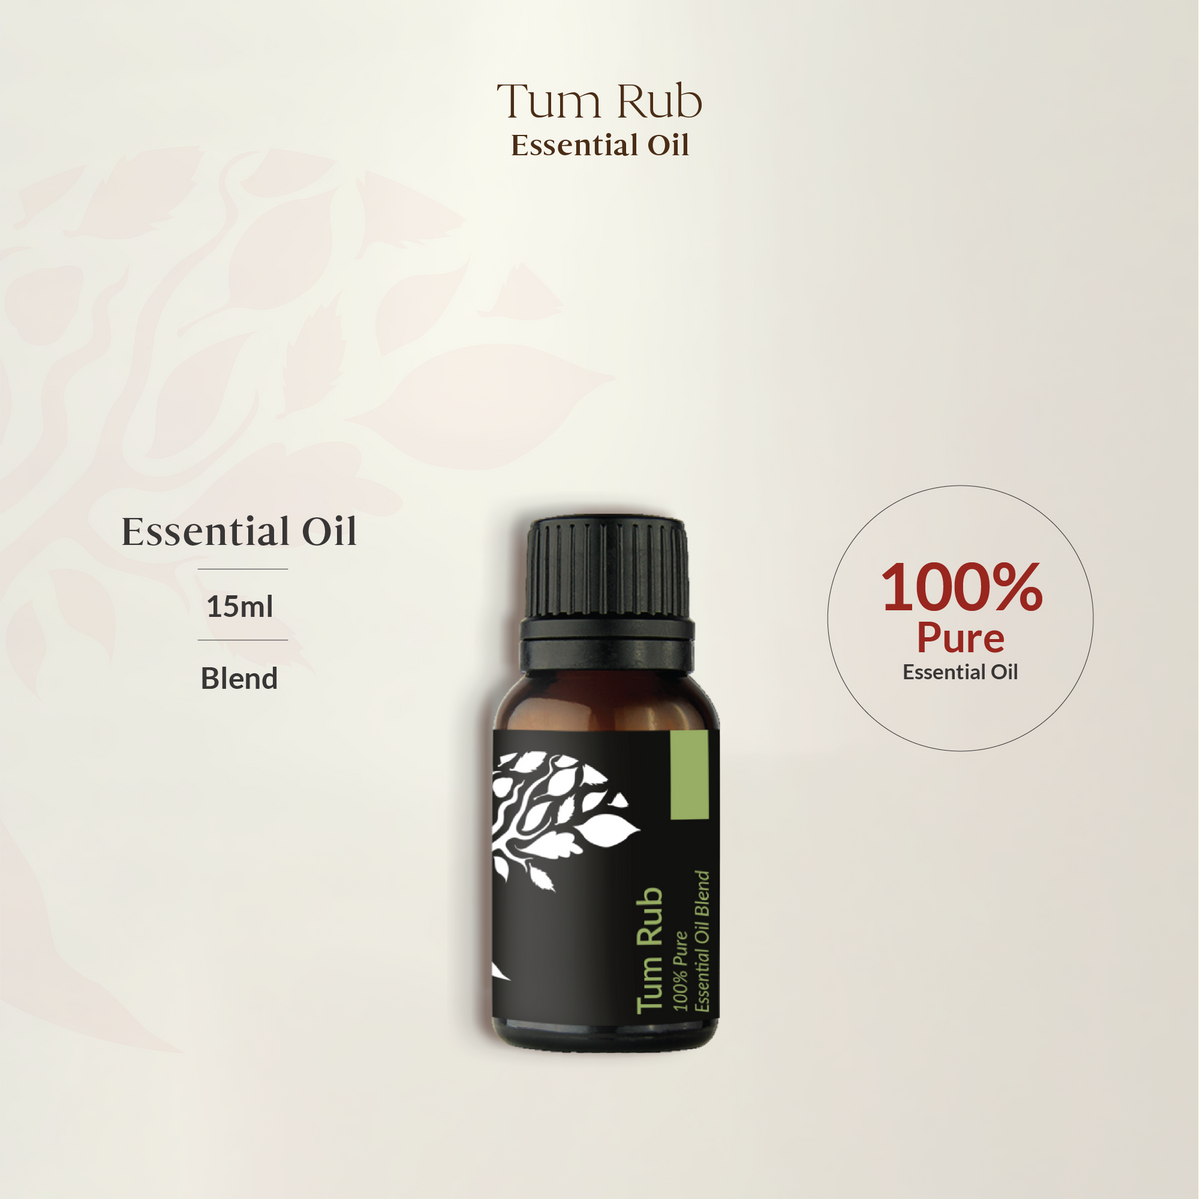 Tum Rub Essential Oil Blend 15ml